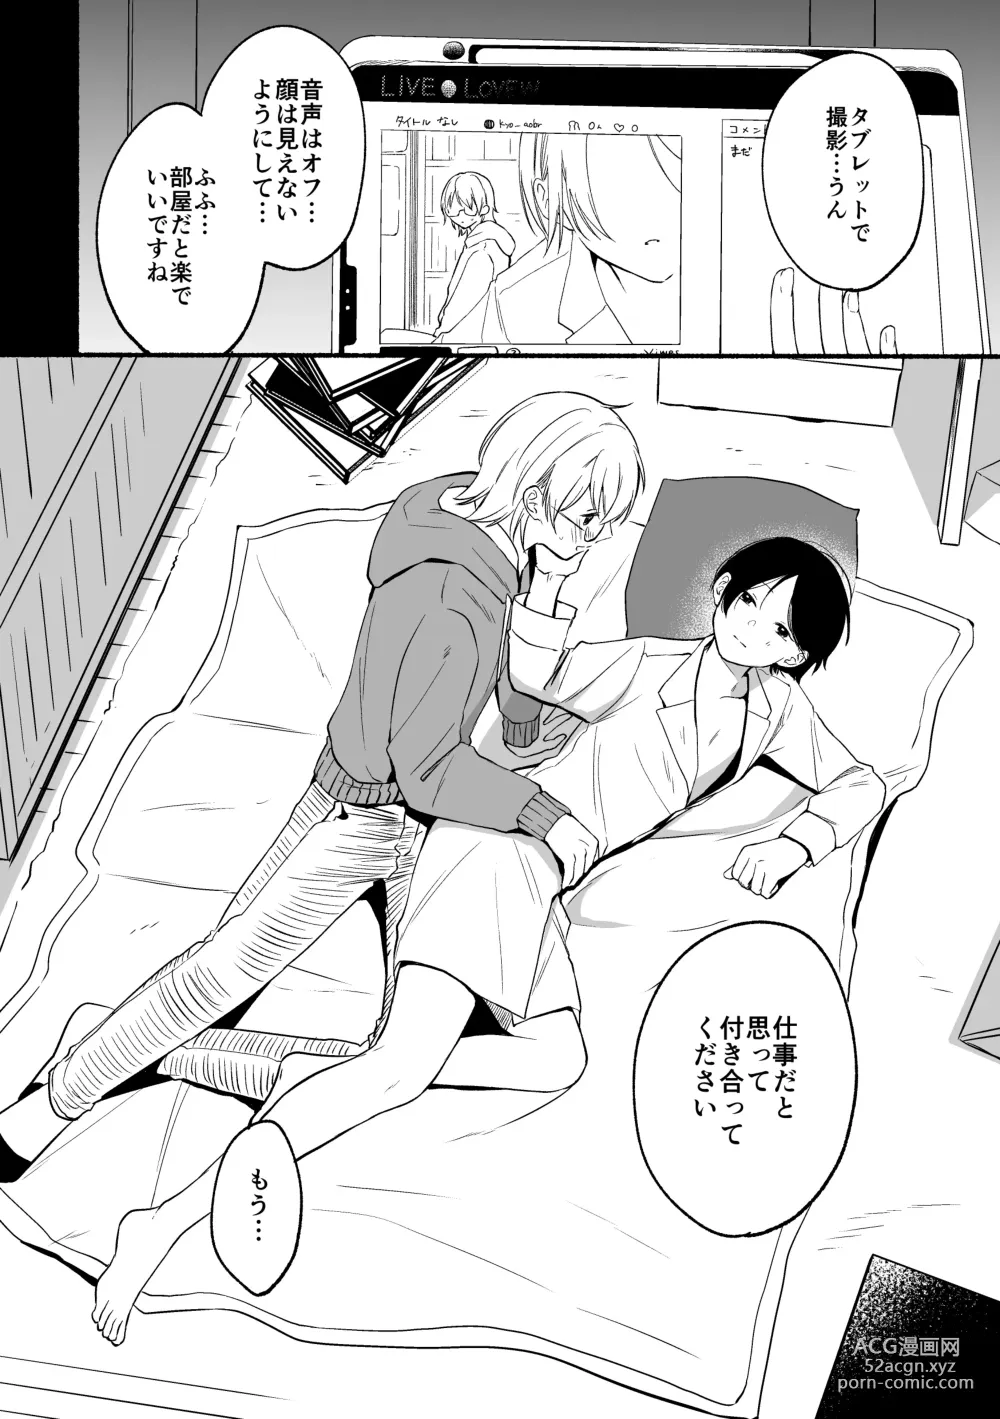 Page 6 of doujinshi Seijinkou Mangakka, Hamedori Haishin Ganbarimasu.